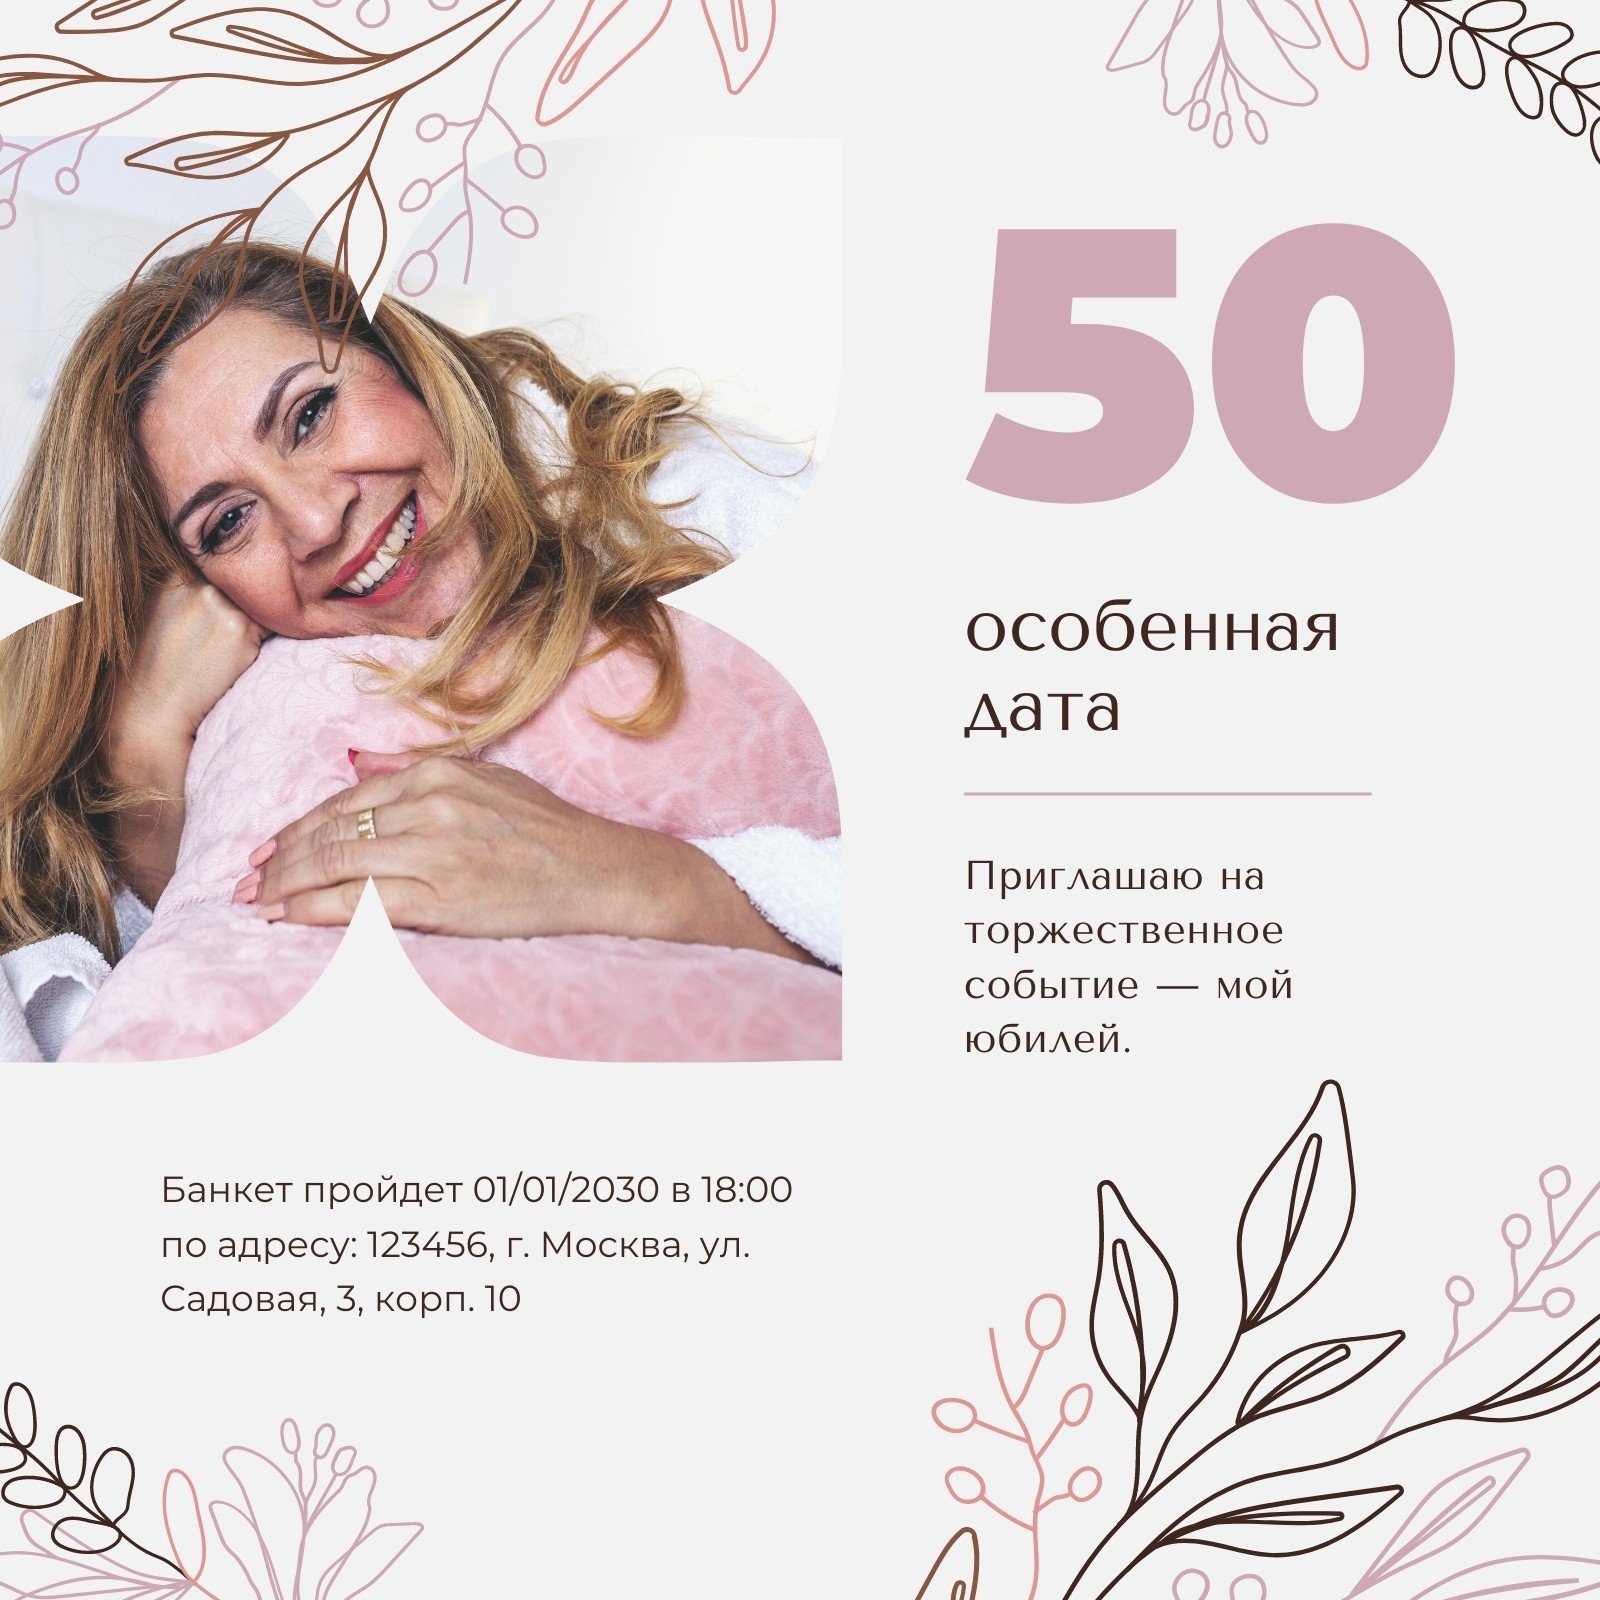 Приглашение 50 лет Изображения – скачать бесплатно на Freepik